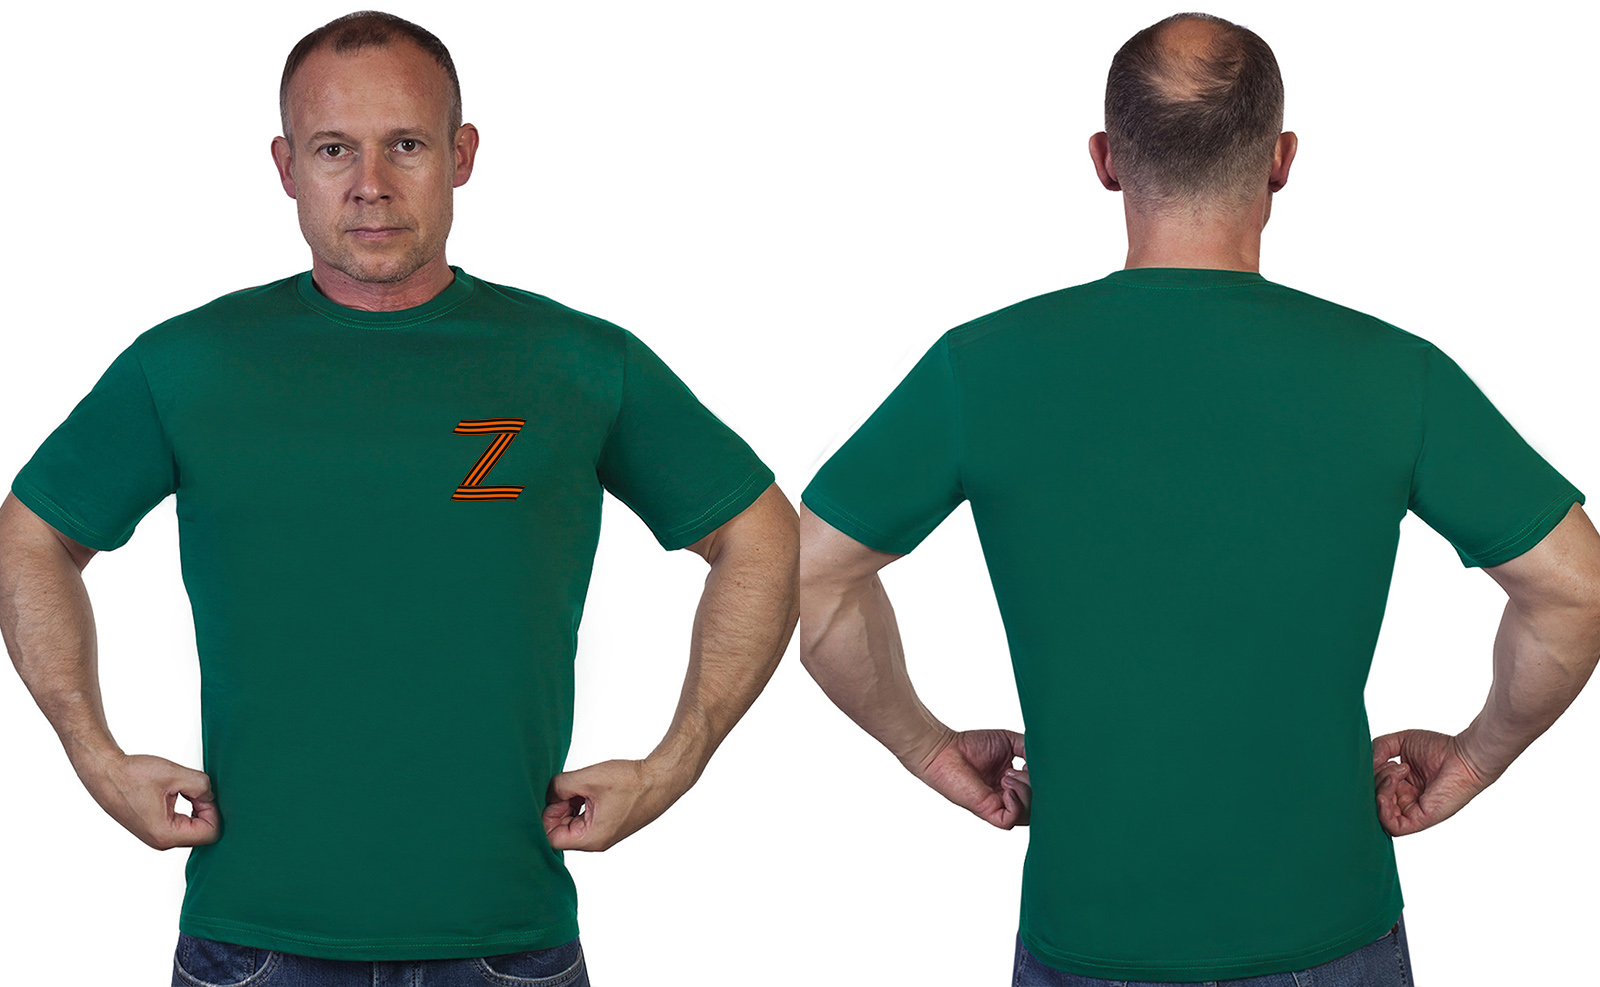 Купить футболку с буквой Z